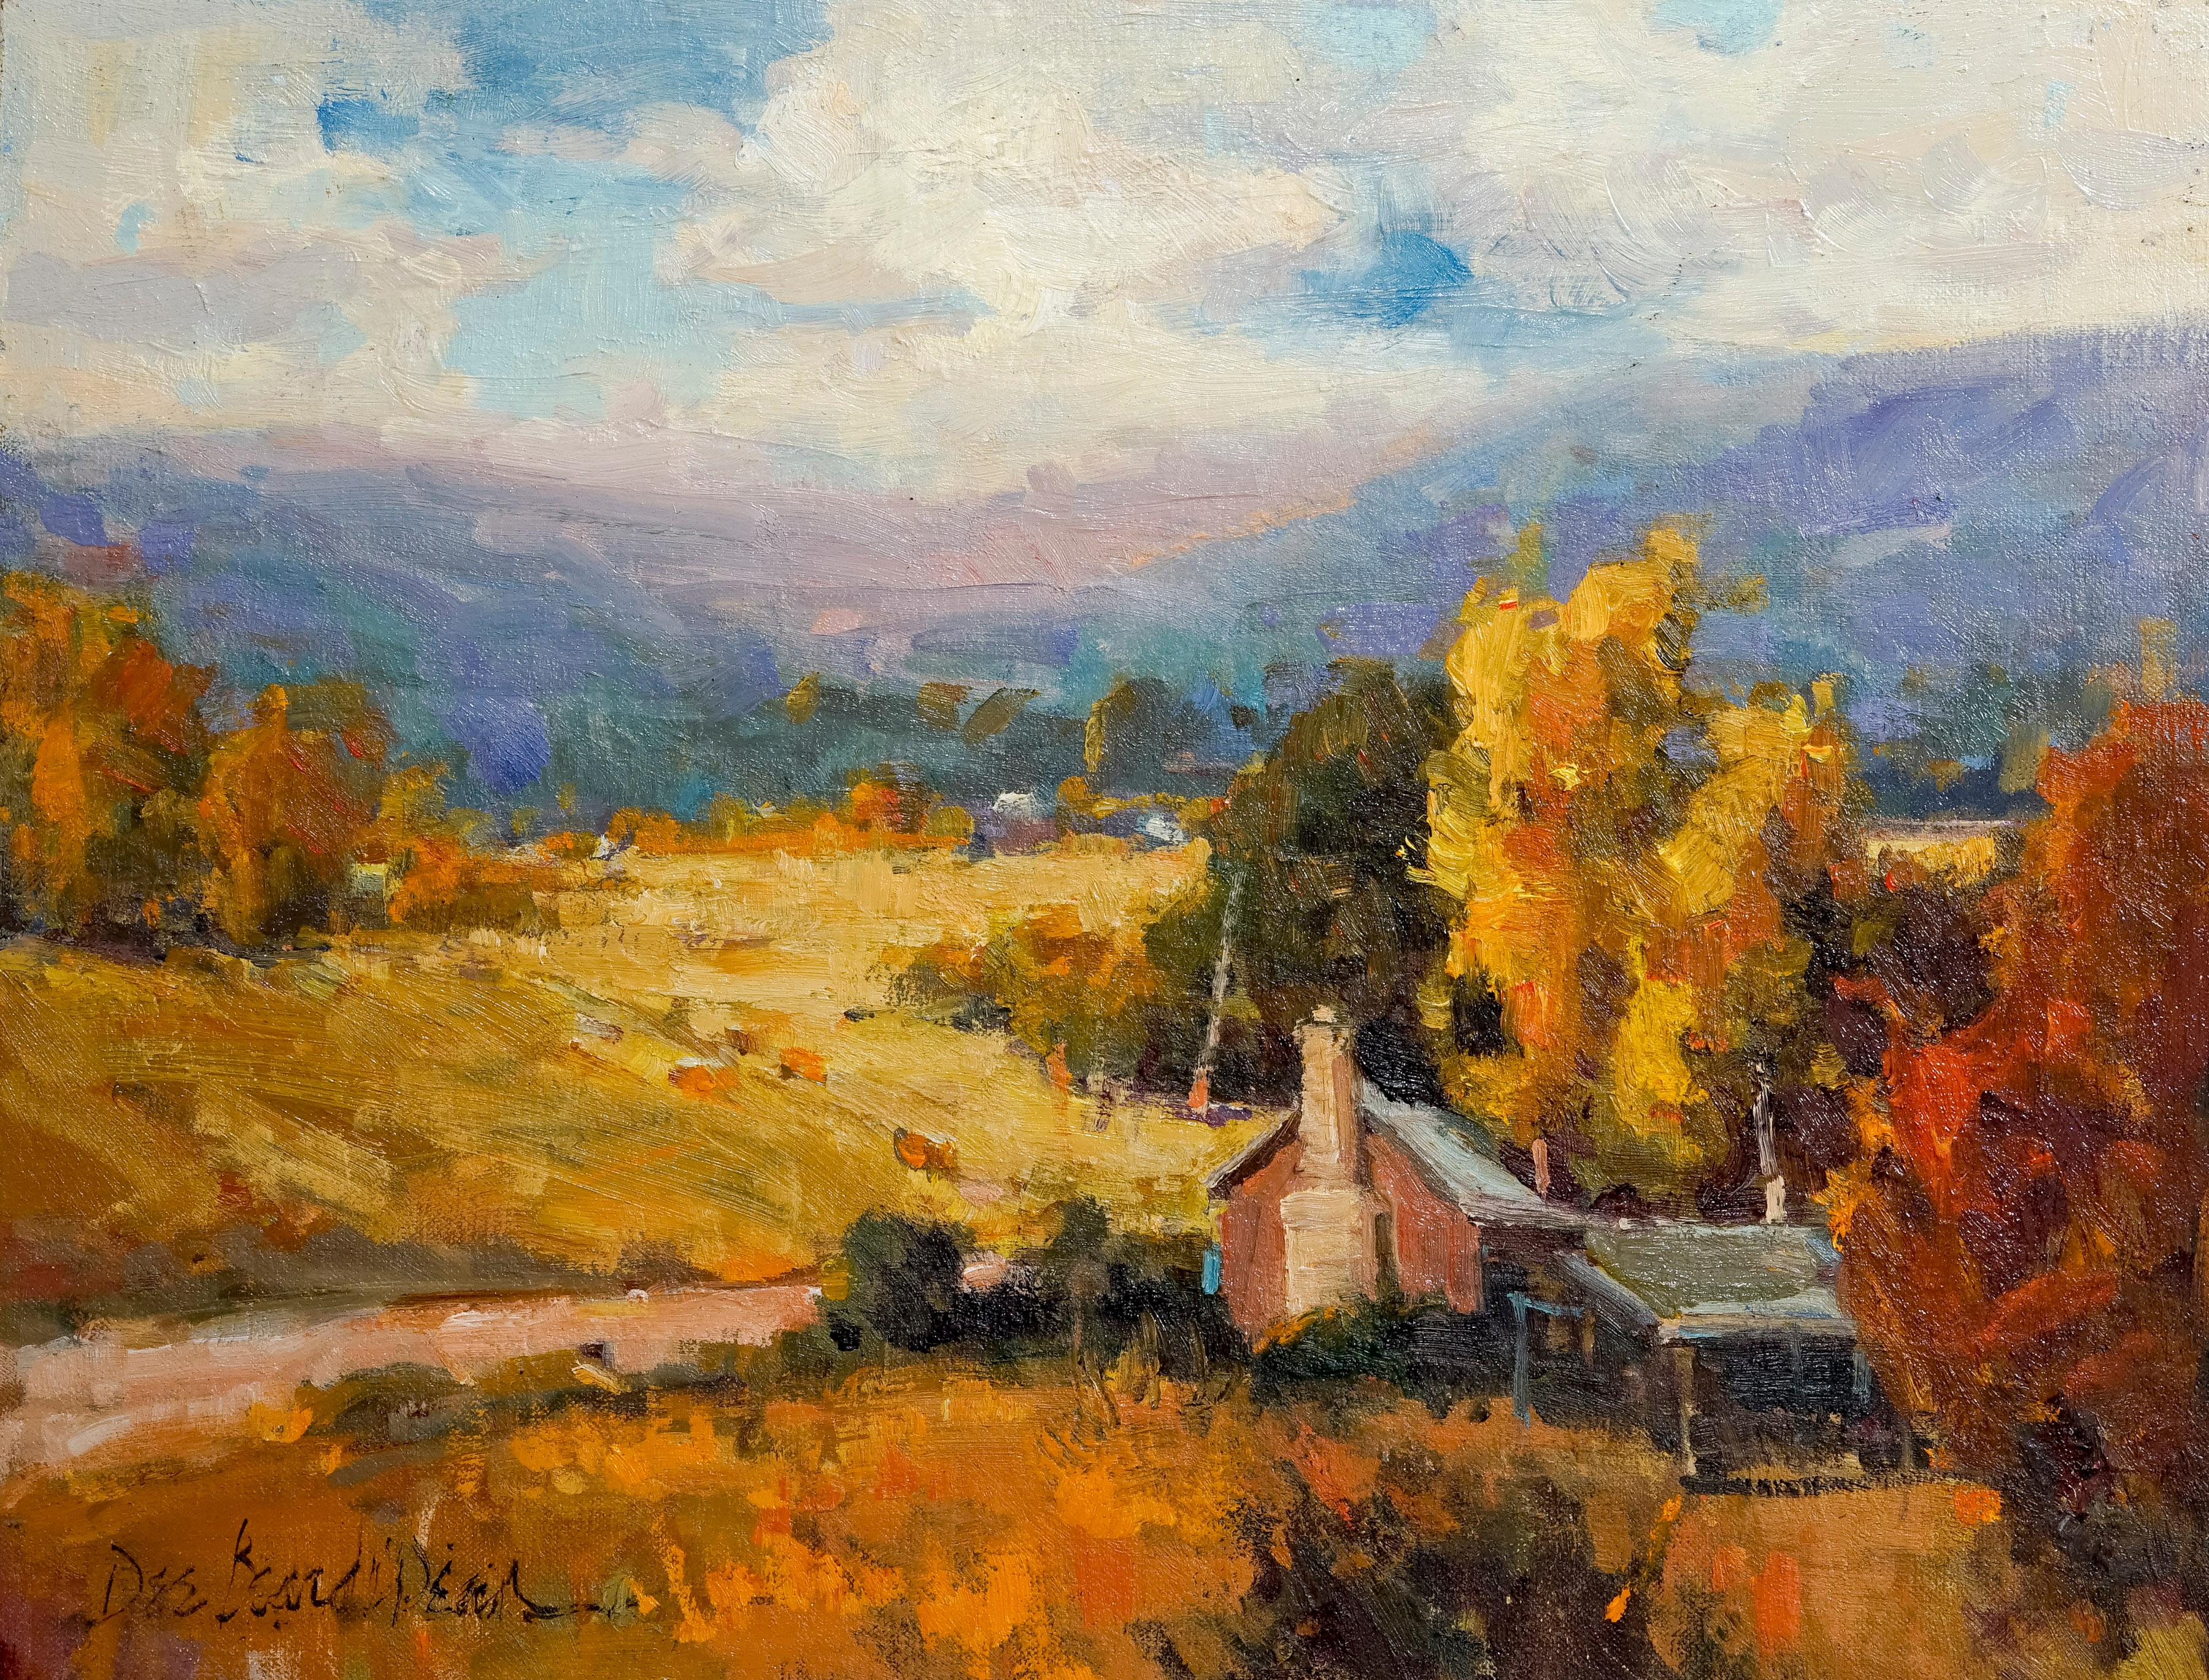 Dee Beard Dean Landscape Painting - Autumn in New Mexico, Plein Air Landscape Original Fine Art Oil on Linen Board